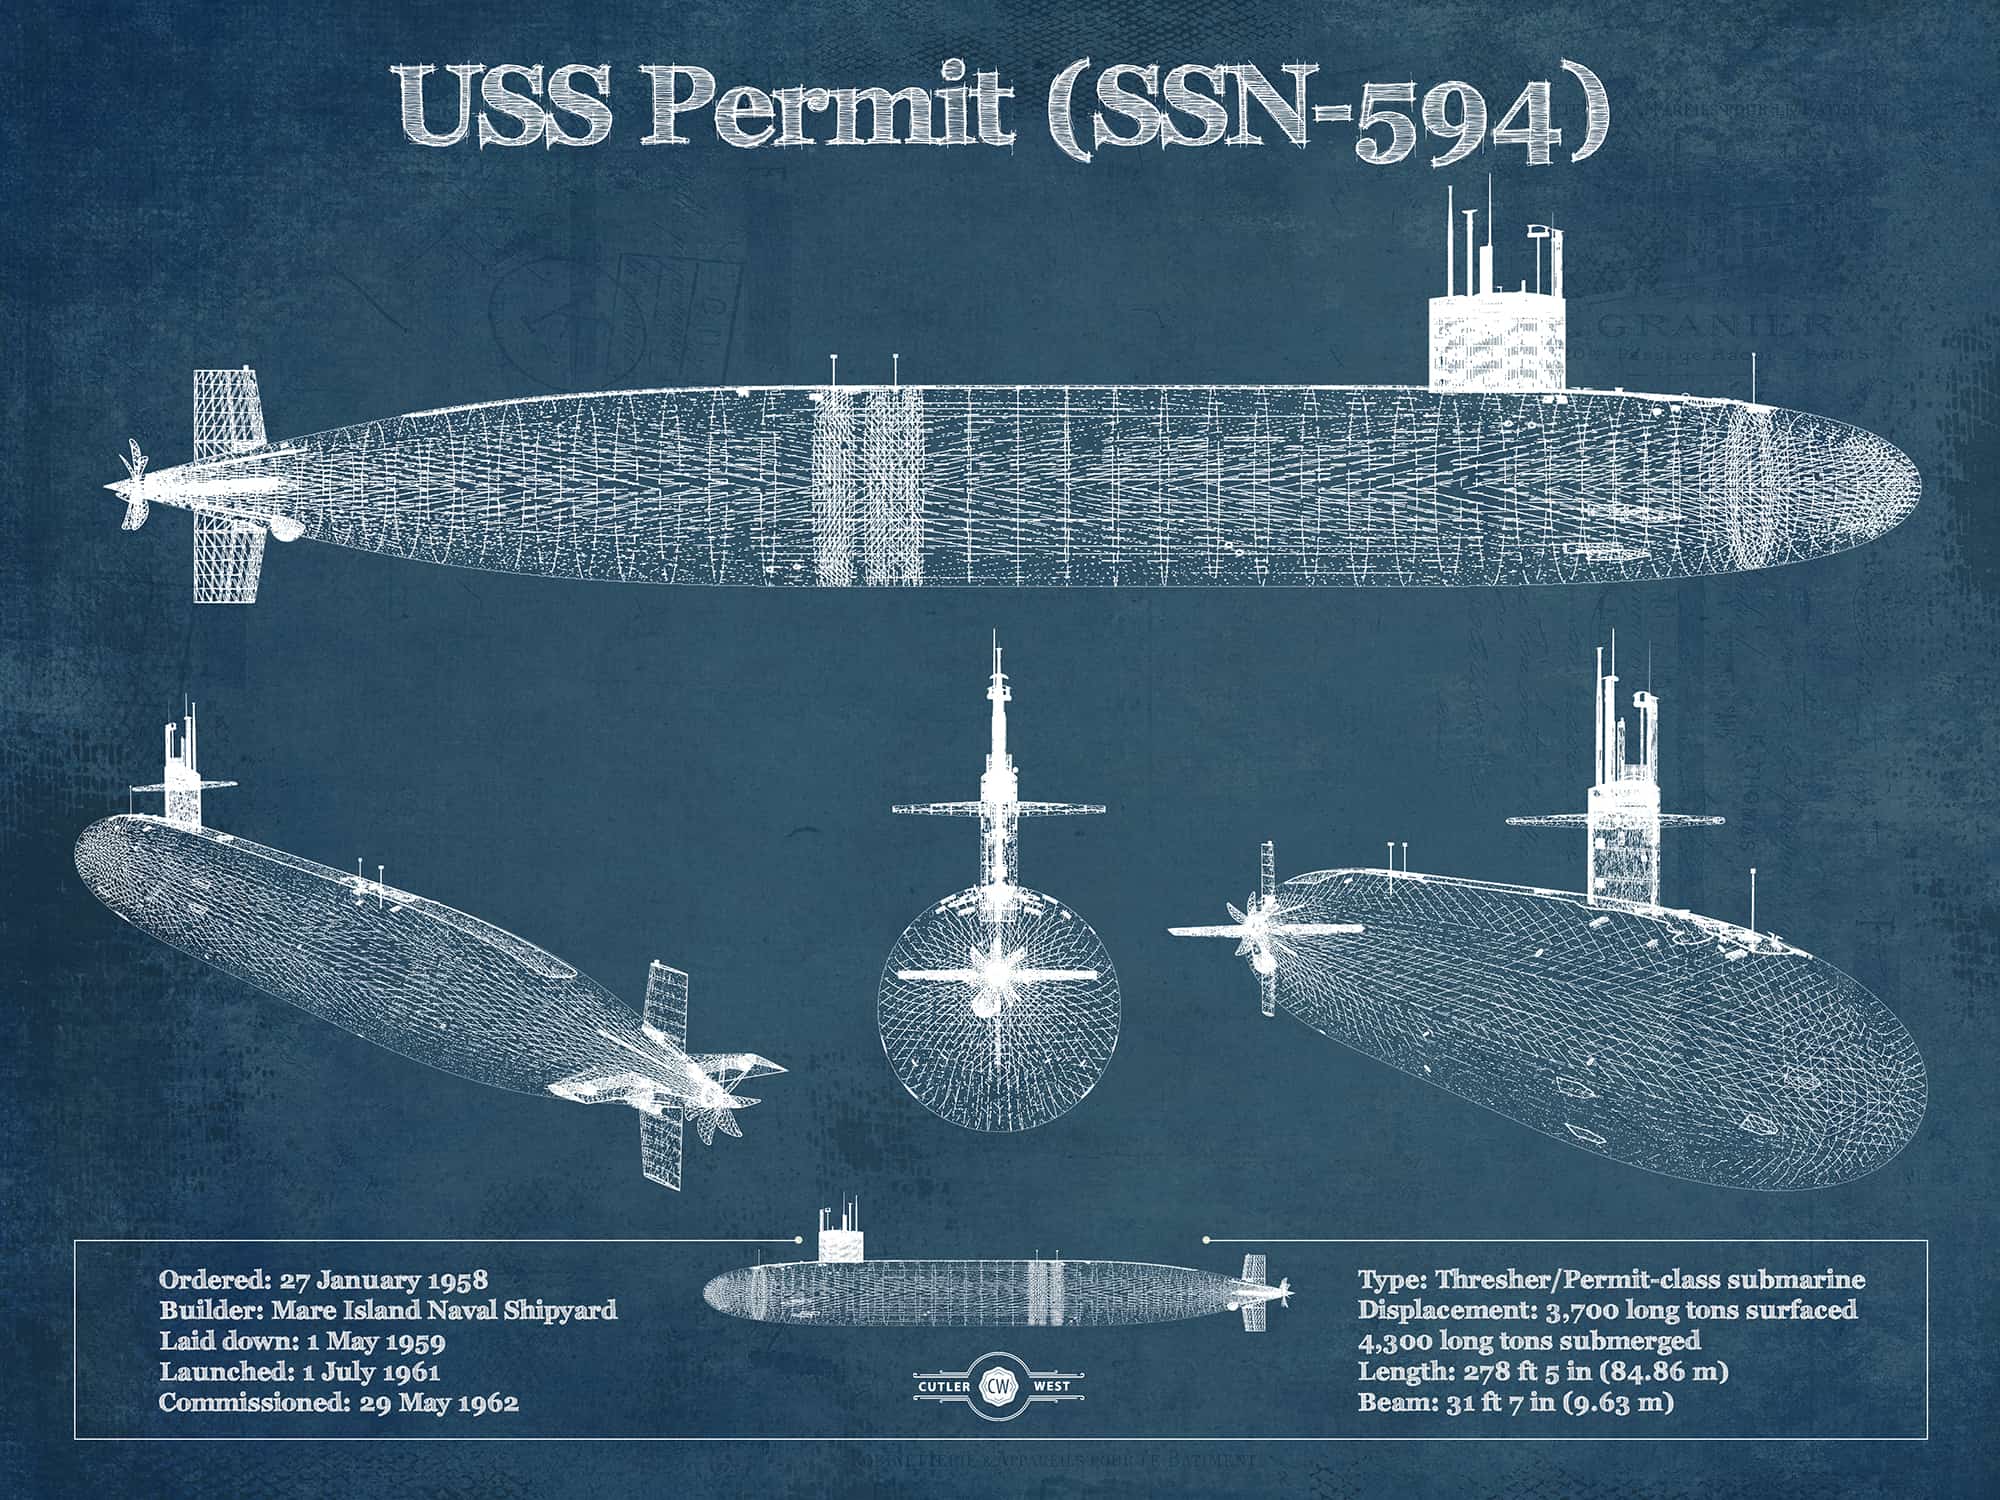 Cutler West USS Permit (SSN-594) Blueprint Original Military Wall Art - Customizable